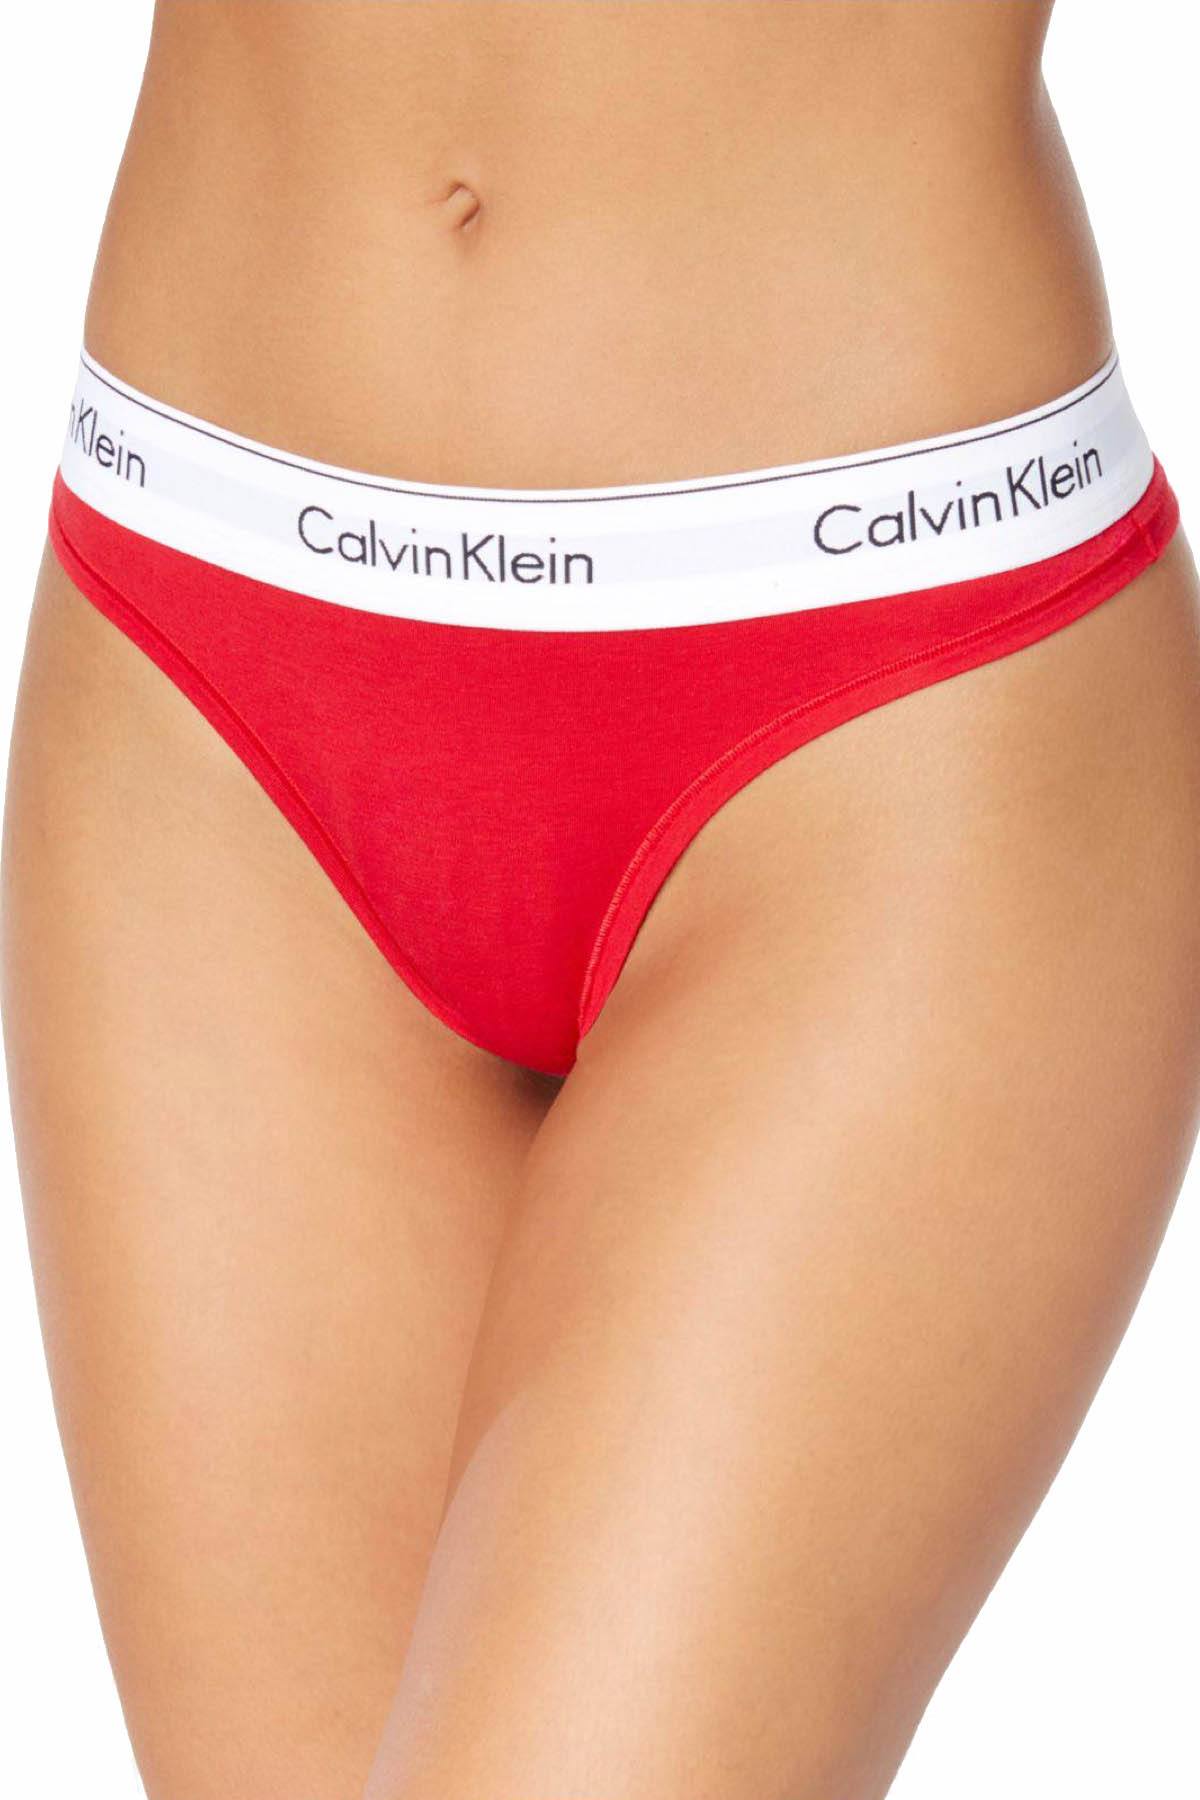 Calvin Klein Empower-Red Modern Cotton Thong